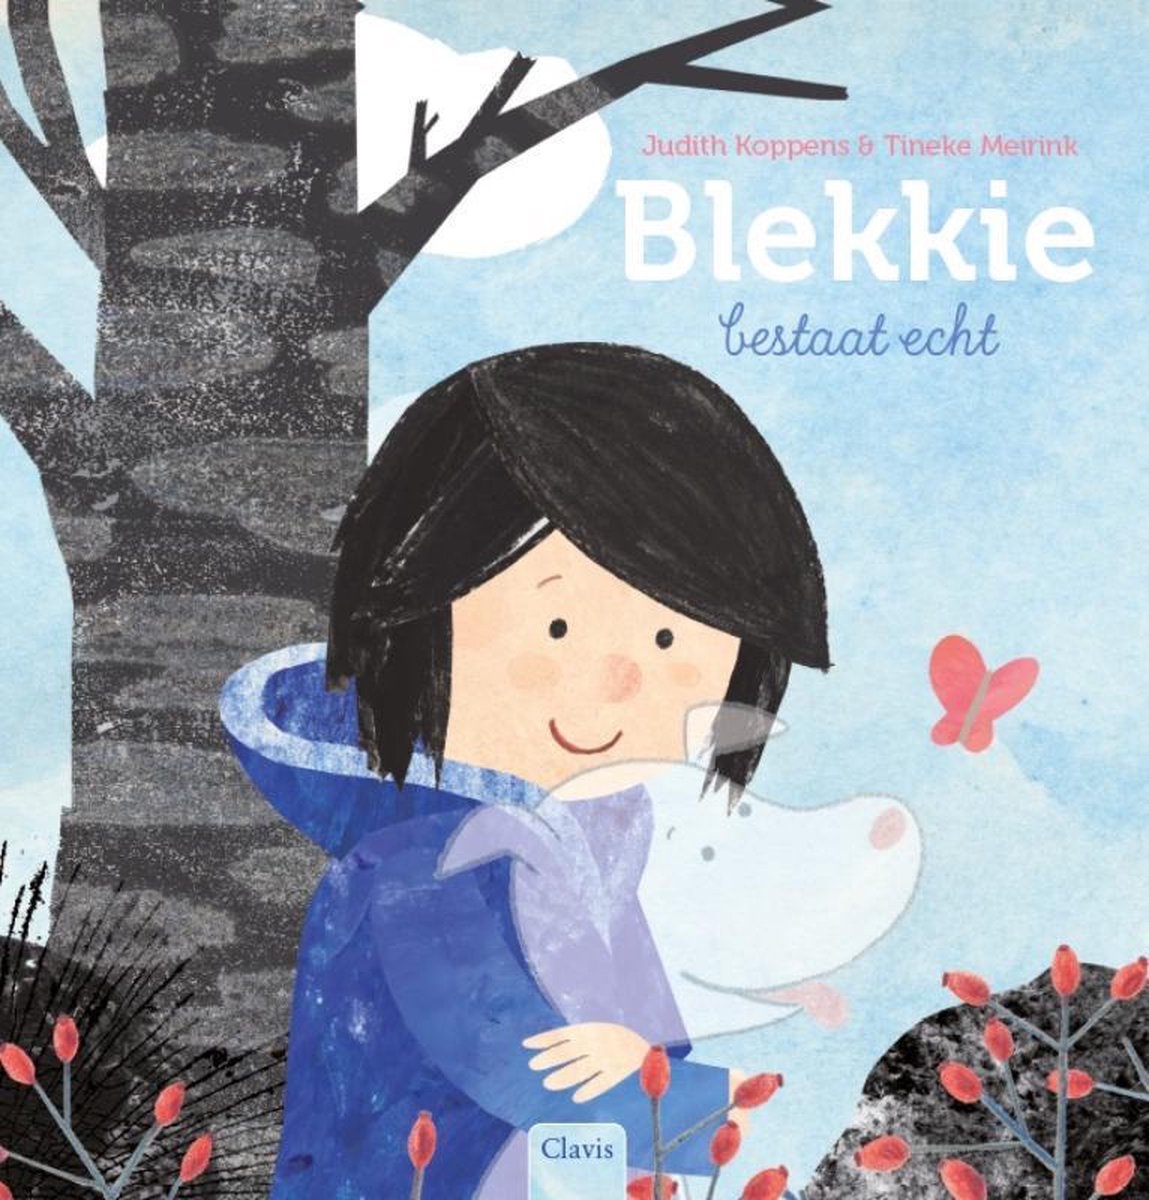 Blekkie bestaat echt - Prentenboek voor kinderen met en zonder imaginair vriendje vanaf 4 jaar